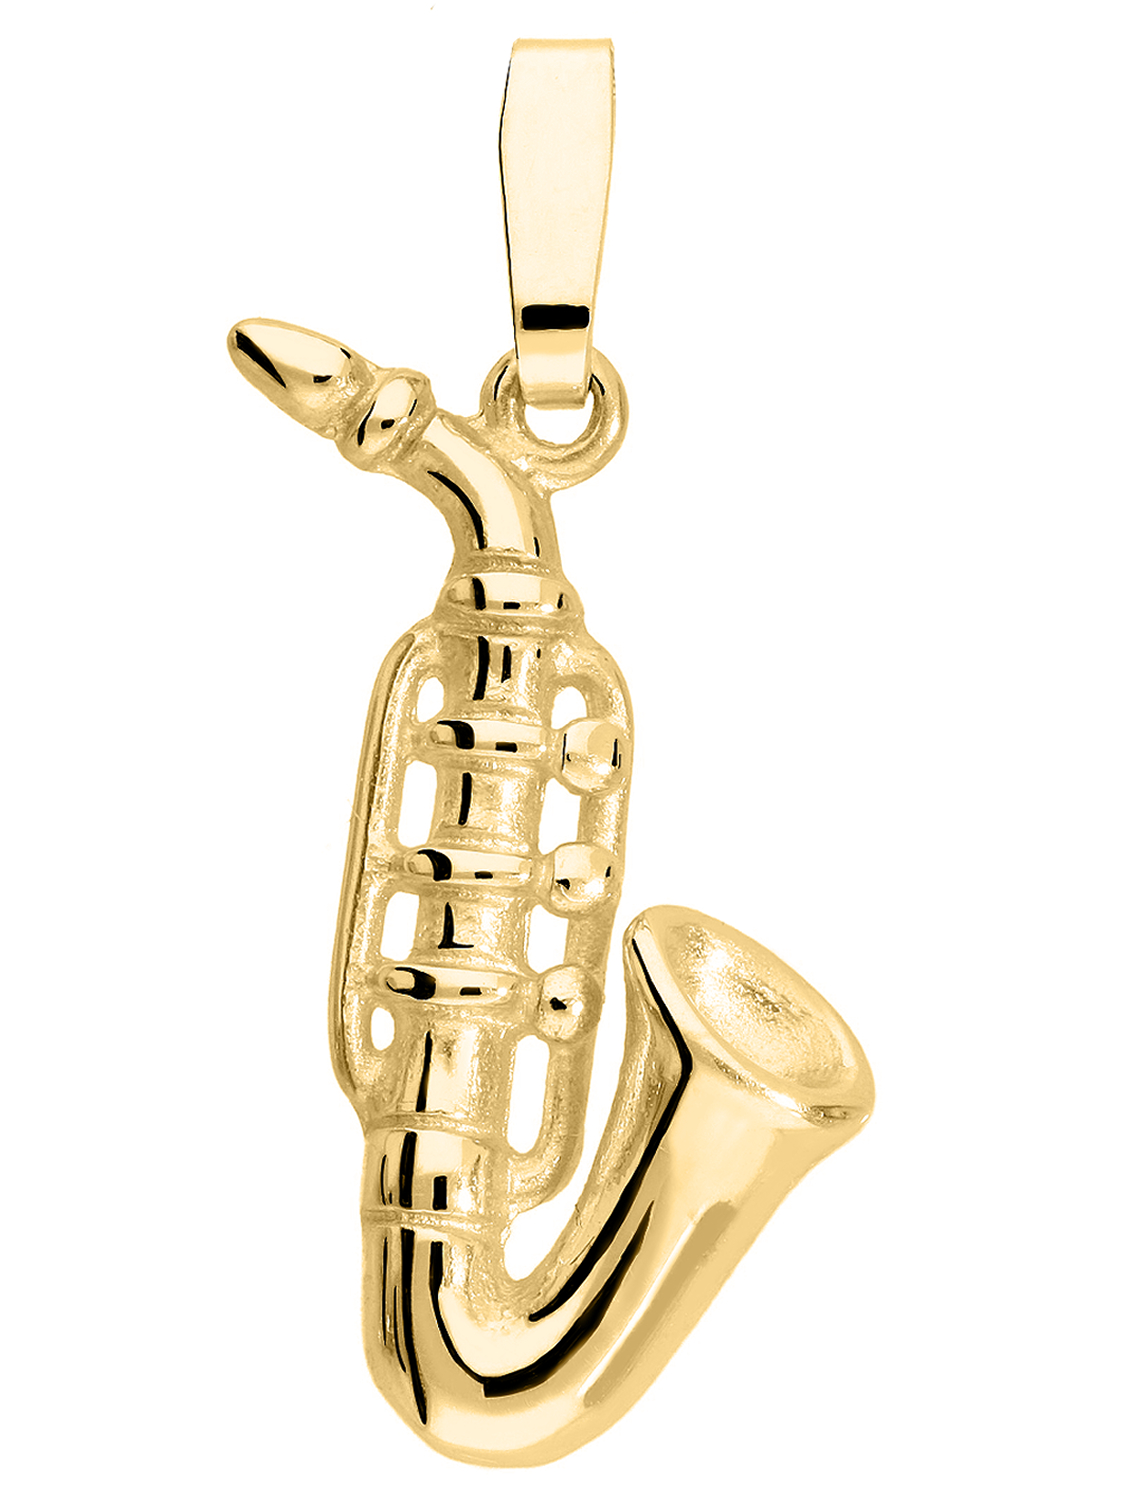 Instrument - Saxophon Motivanhänger 585 Gold